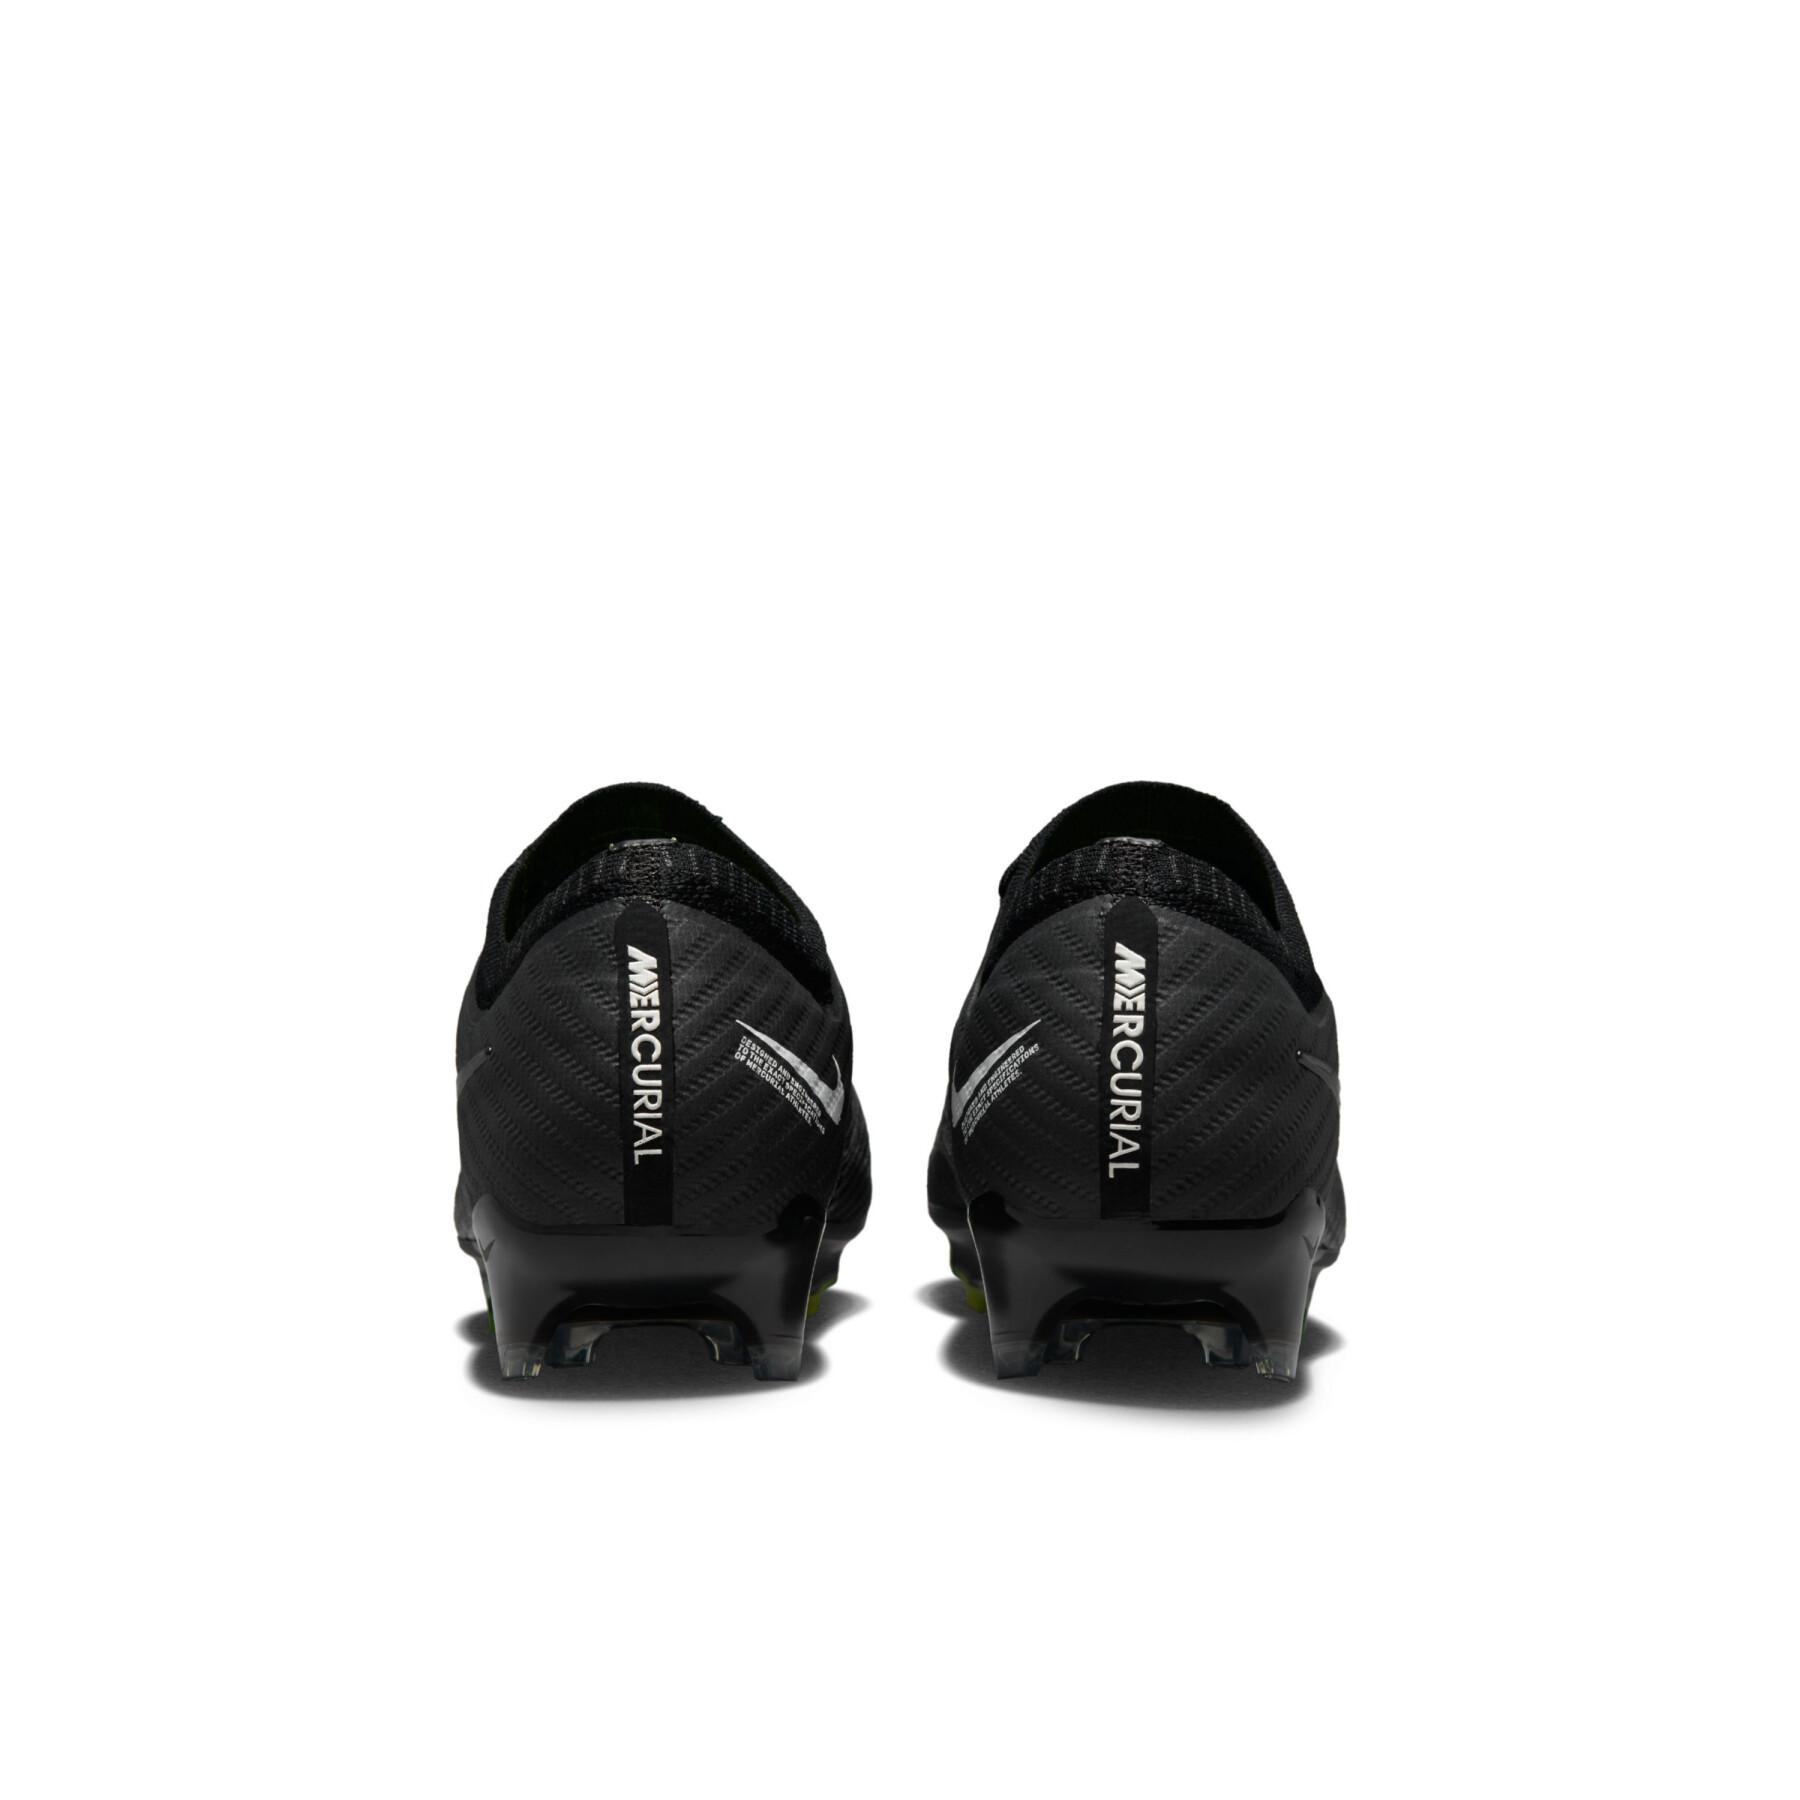 Scarpe da calcio Nike Zoom Mercurial Vapor 15 Elite FG - Shadow Black Pack